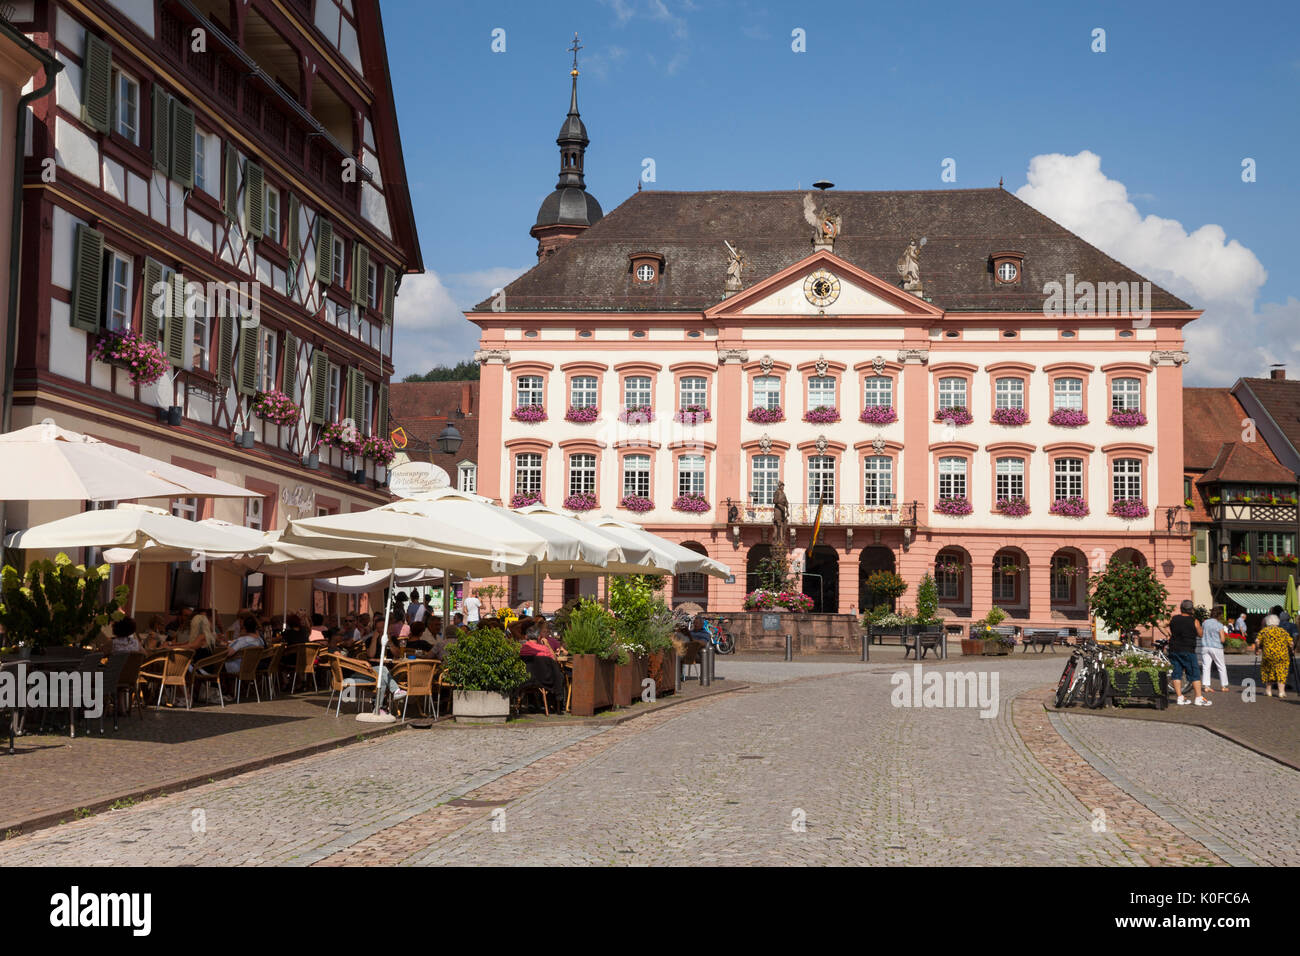 Rathaus der Stadt Gengenbach, Schwarzwald, Baden-Württemberg, Deutschland, Europa Stockfoto